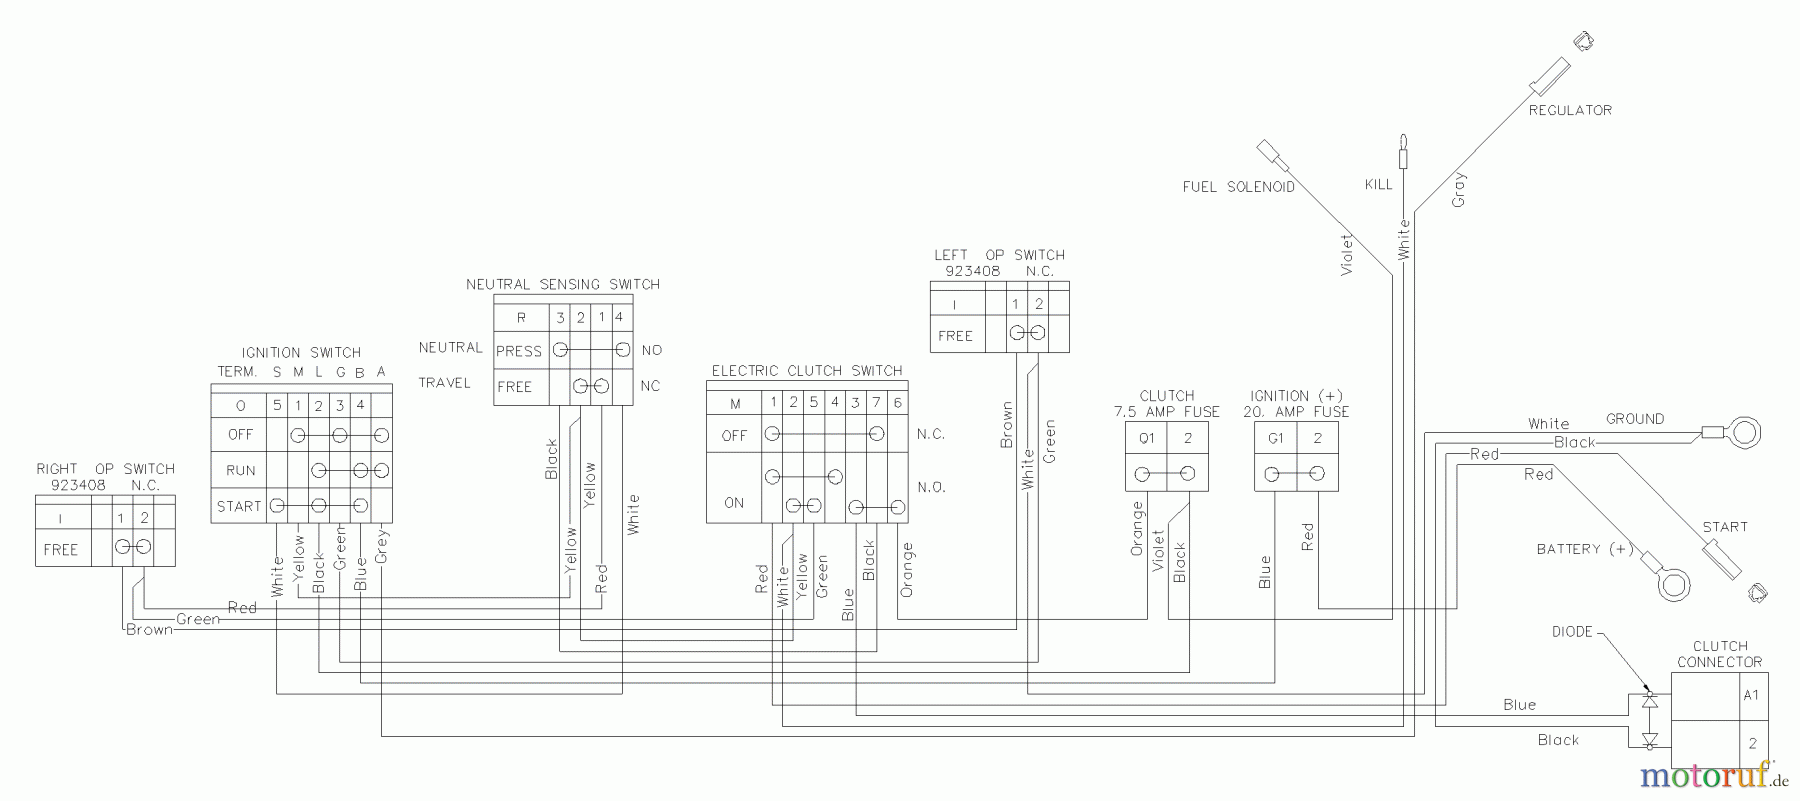  Husqvarna Rasenmäher für Großflächen WHF 5218ETS (968999130) - Husqvarna Wide-Area Walk-Behind Mower (2002-09 & After) Wiring Schematic